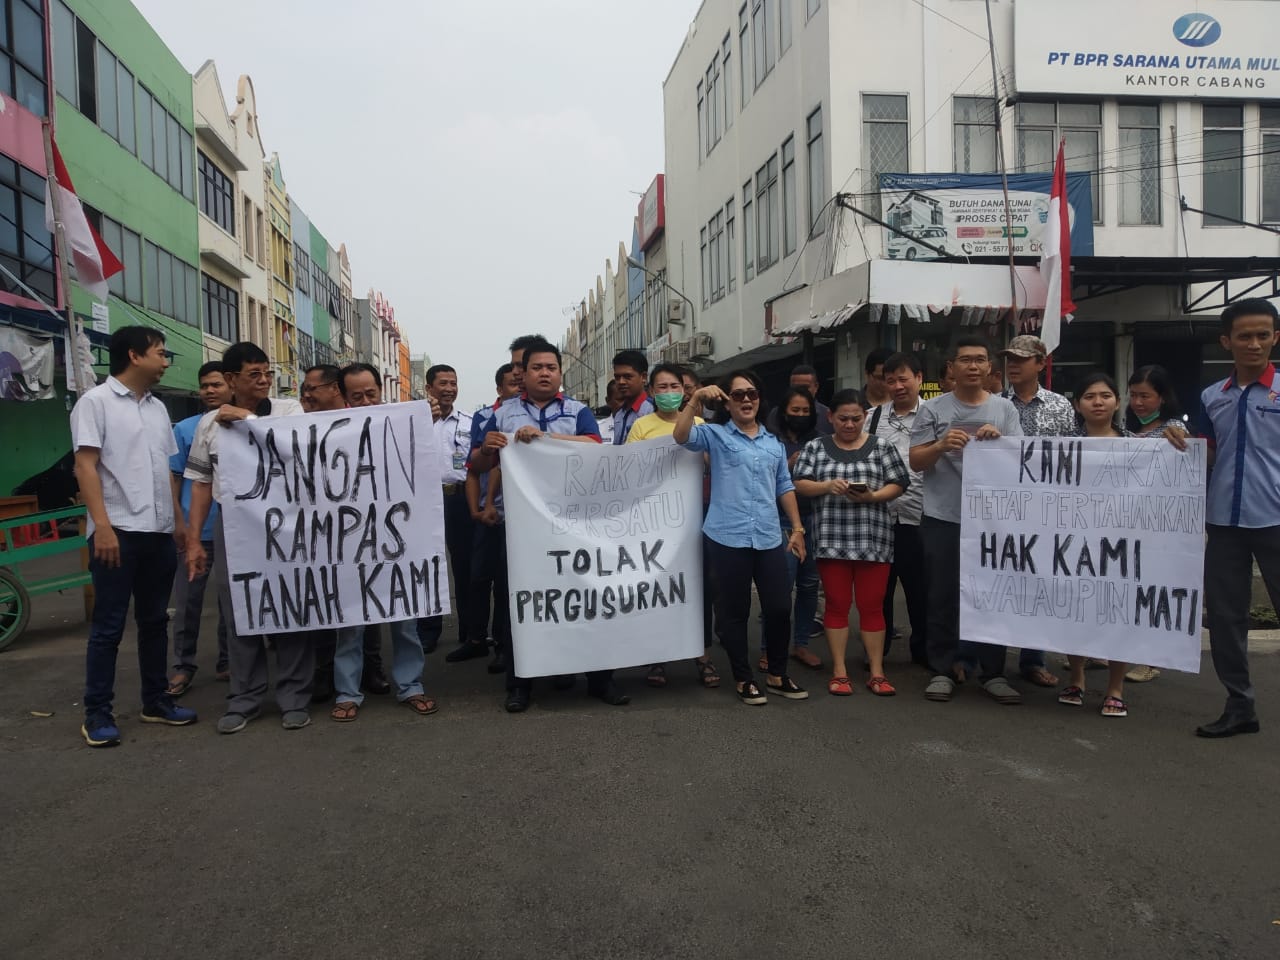 Unjuk rasa pemilik kios di Kota Tangerang. Mereka memprotes kebijakan Pemkot Tangerang karena dinilai merugikan.(ayip)